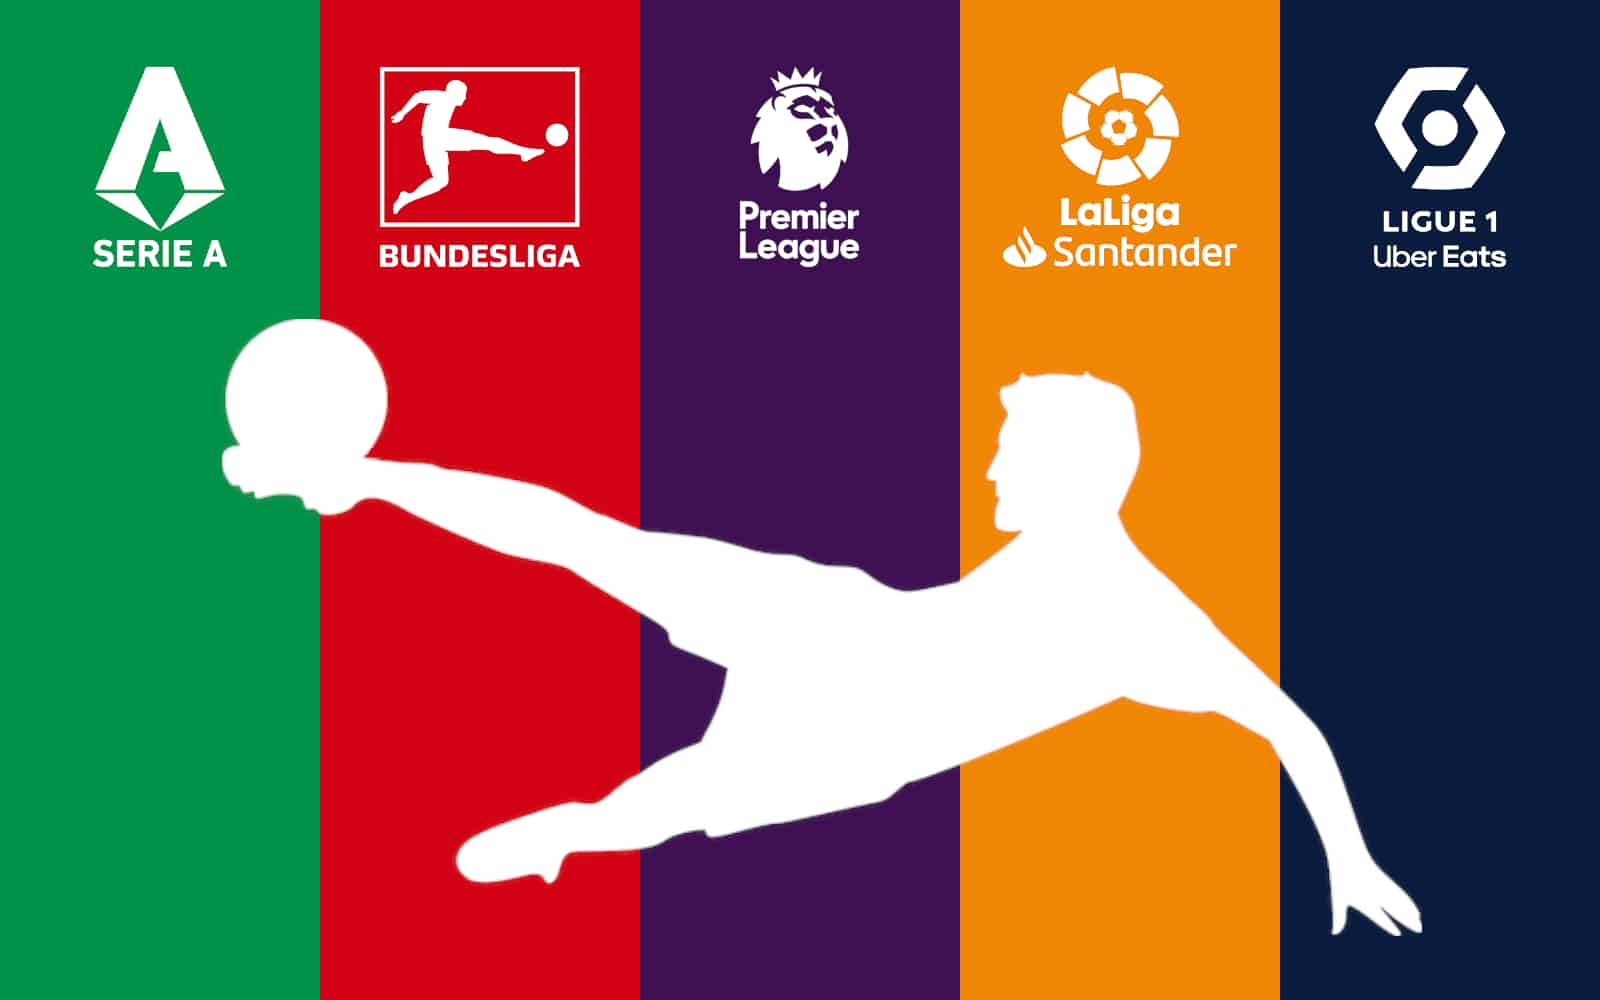 Ligi zagraniczne: Dublet Lewandowskiego, sensacyjne porażki Realu Madryt i Barcelony